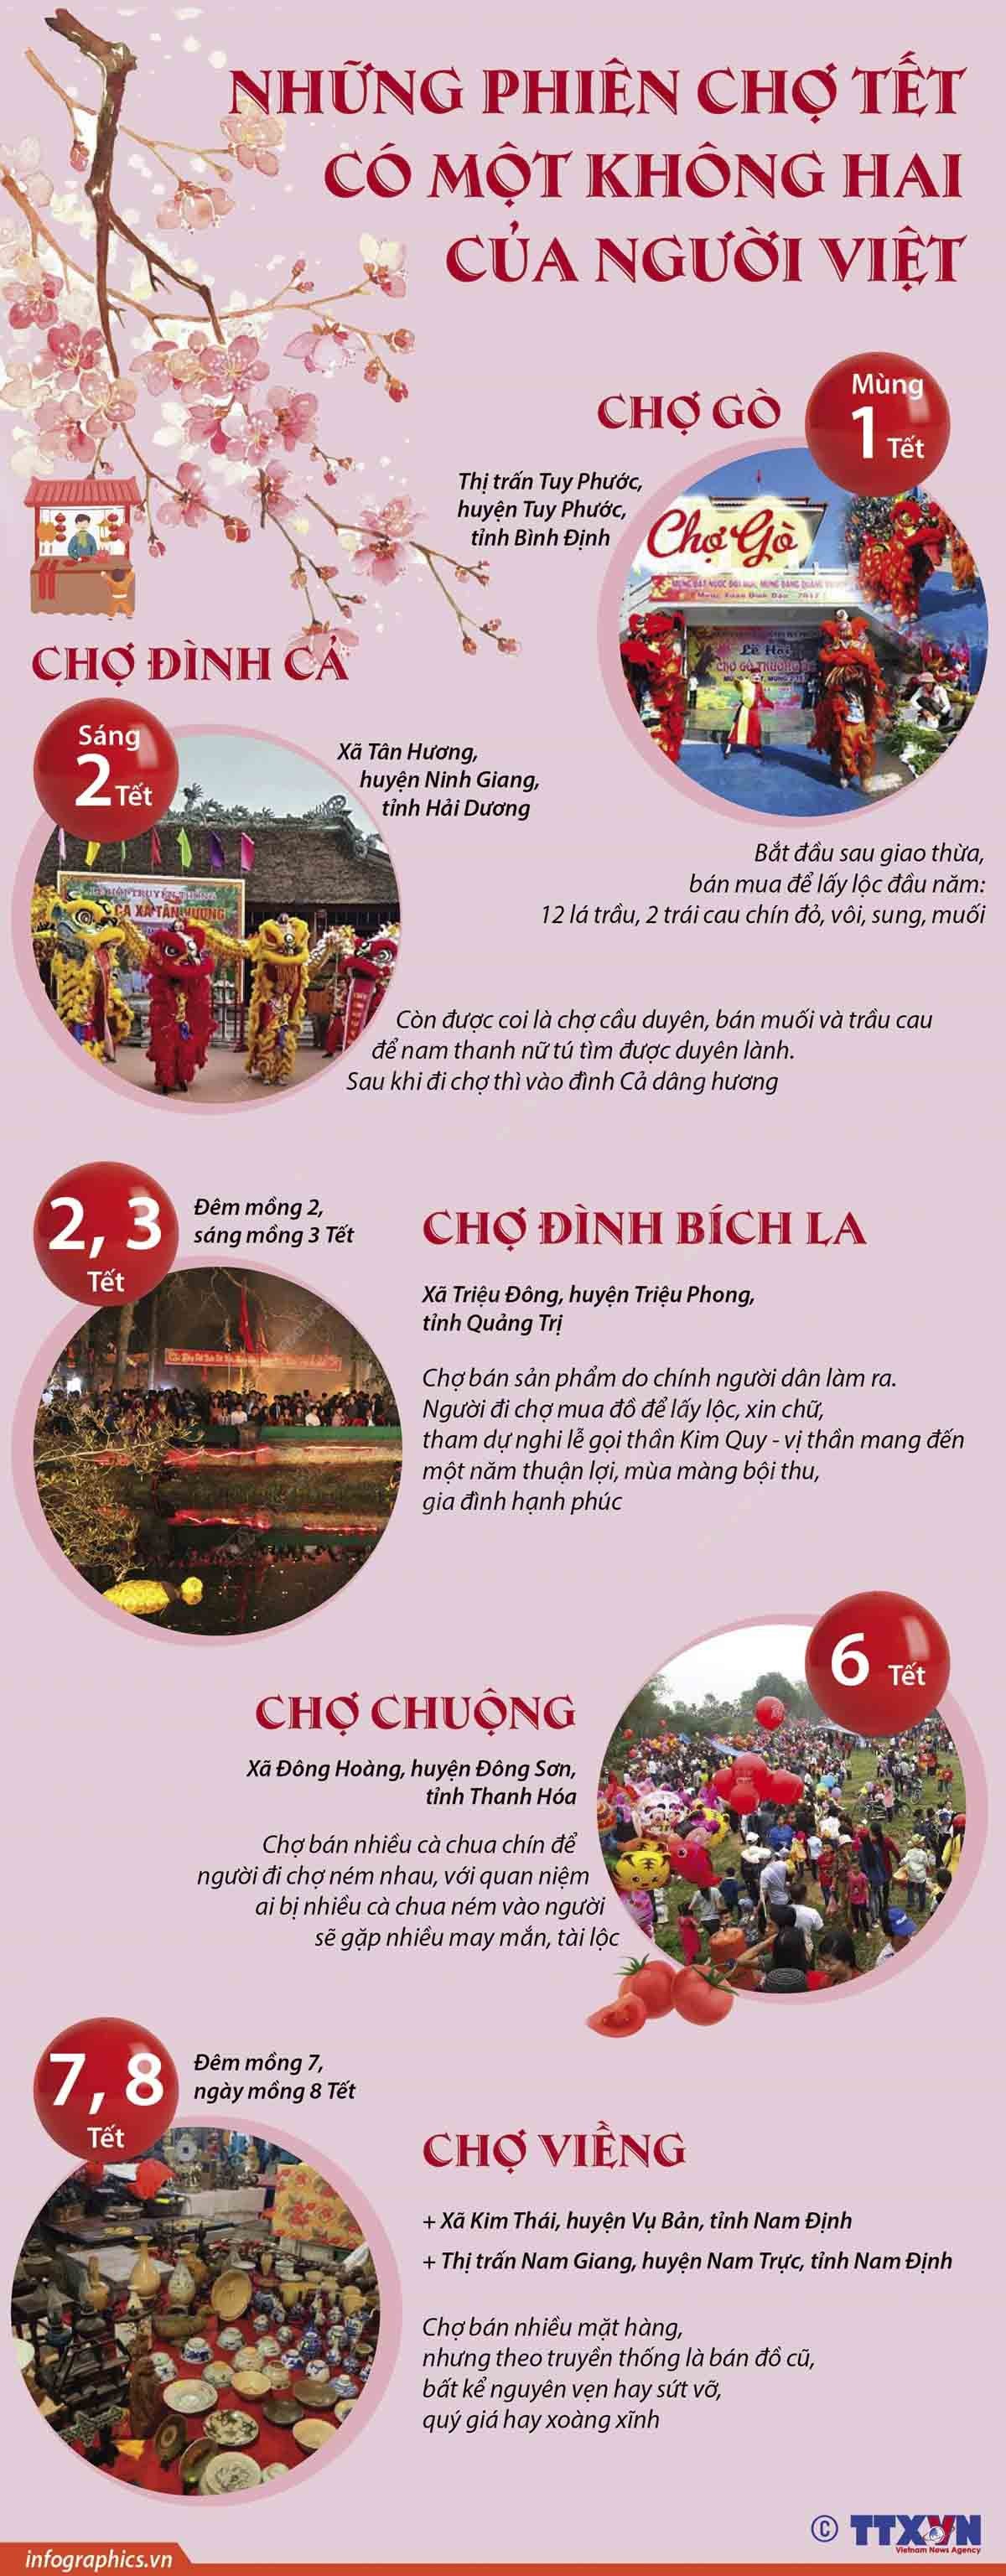 Những phiên chợ Tết đặc biệt của người Việt